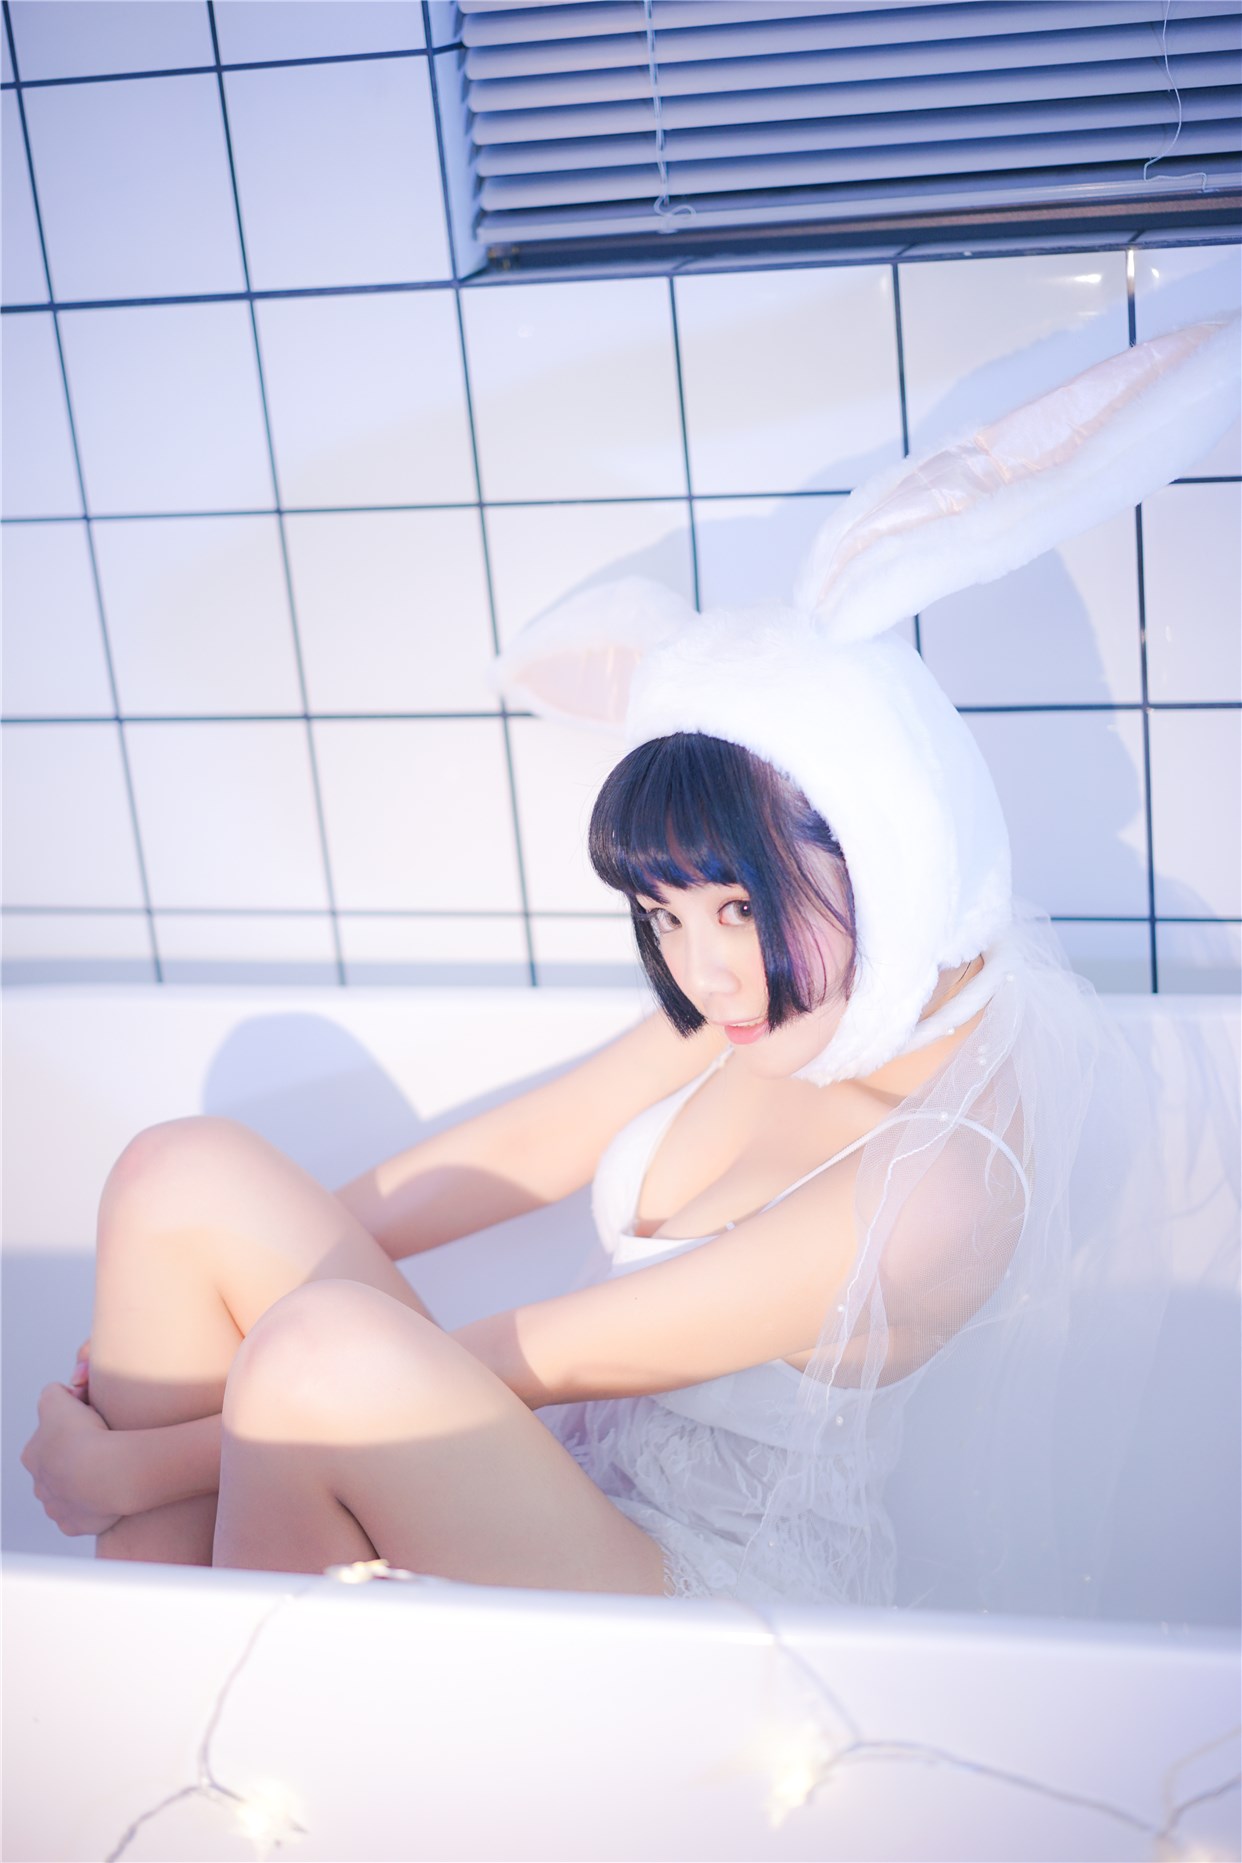 【兔玩映画】浴缸里的兔子 兔玩映画 第39张